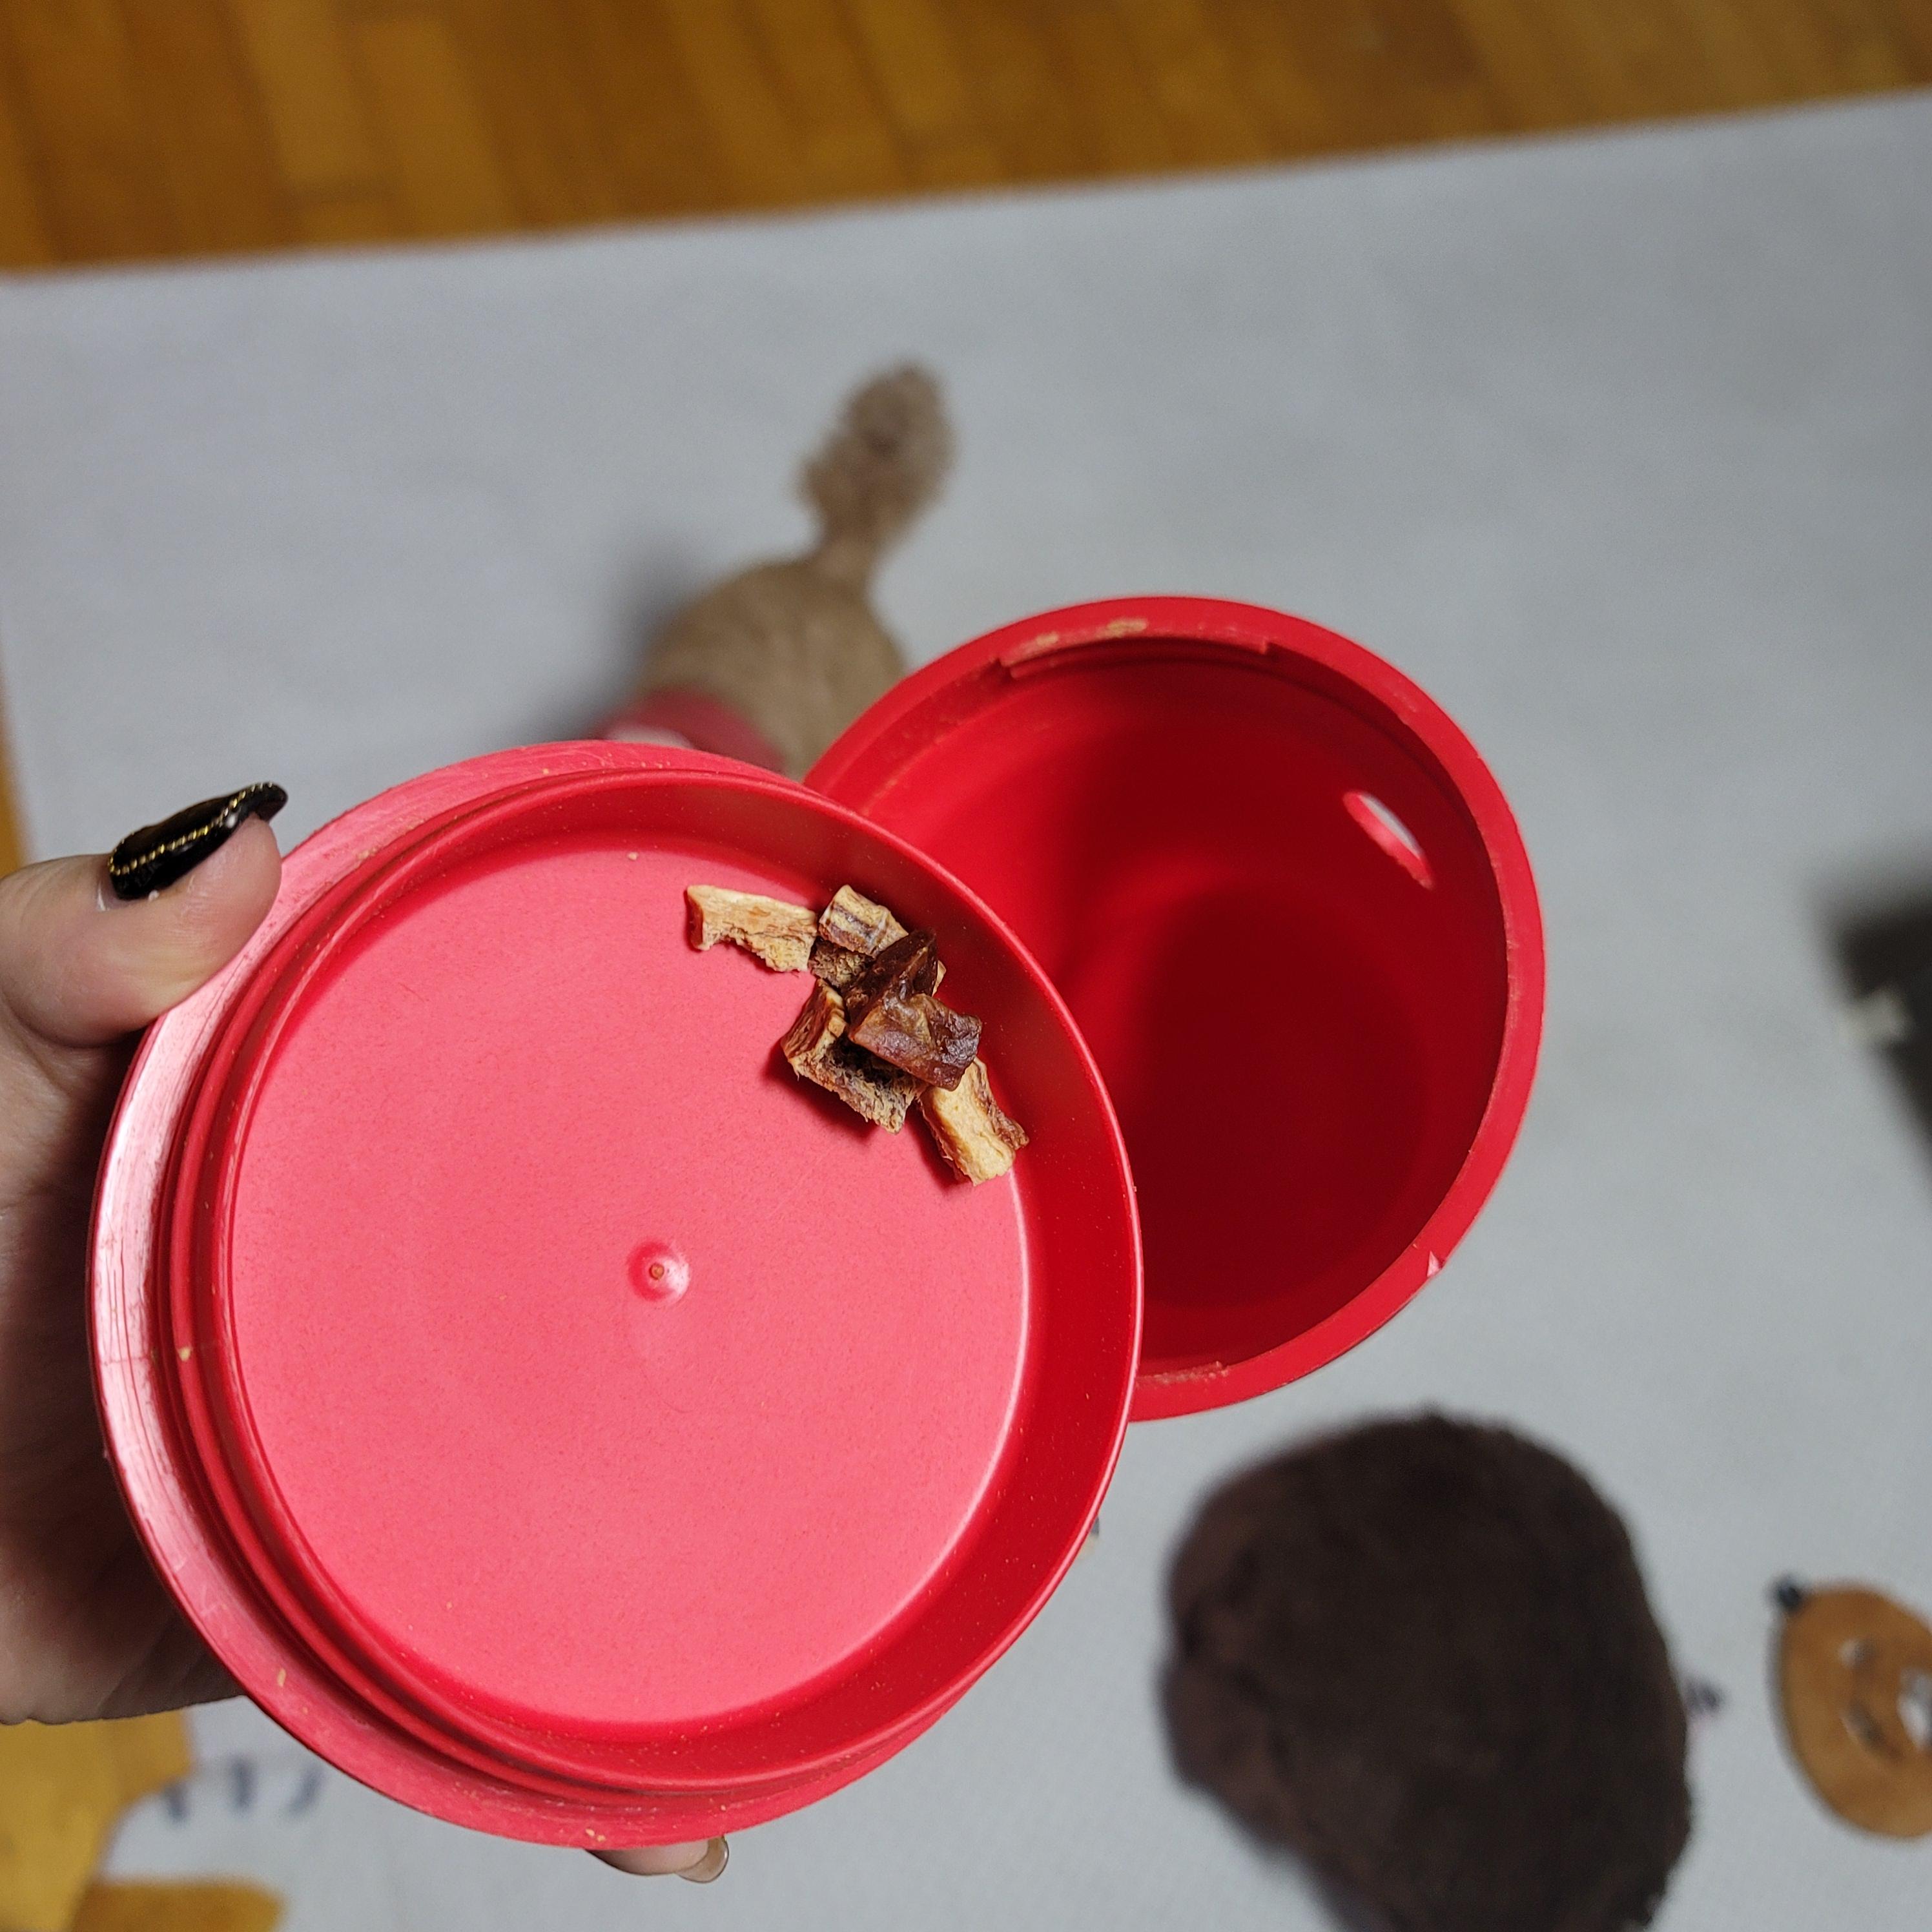 강아지 노즈워크 장난감에 간식 넣어준 사진